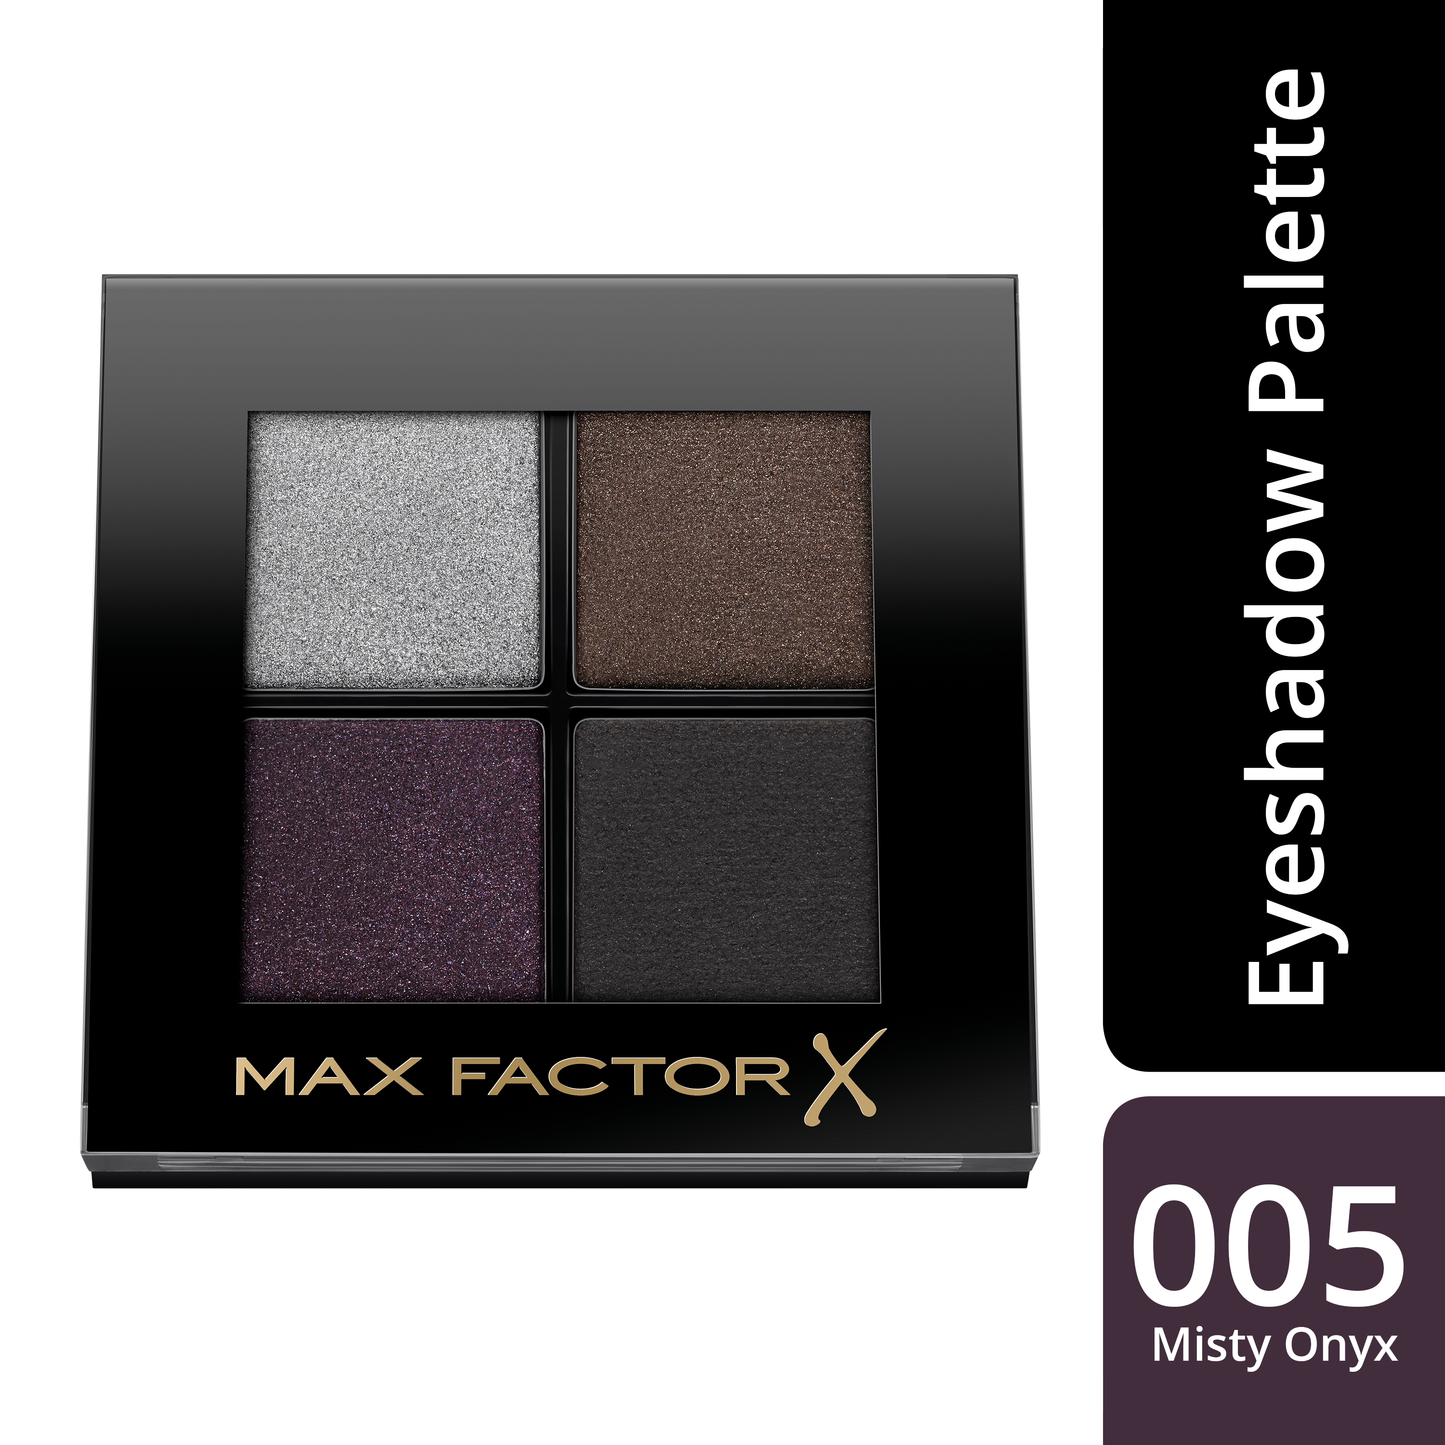 Max Factor Colour X-Pert Soft Touch Palette, 4 Ombretti dal Colore Intenso, Altamente Sfumabili, 005 Misty Onyx